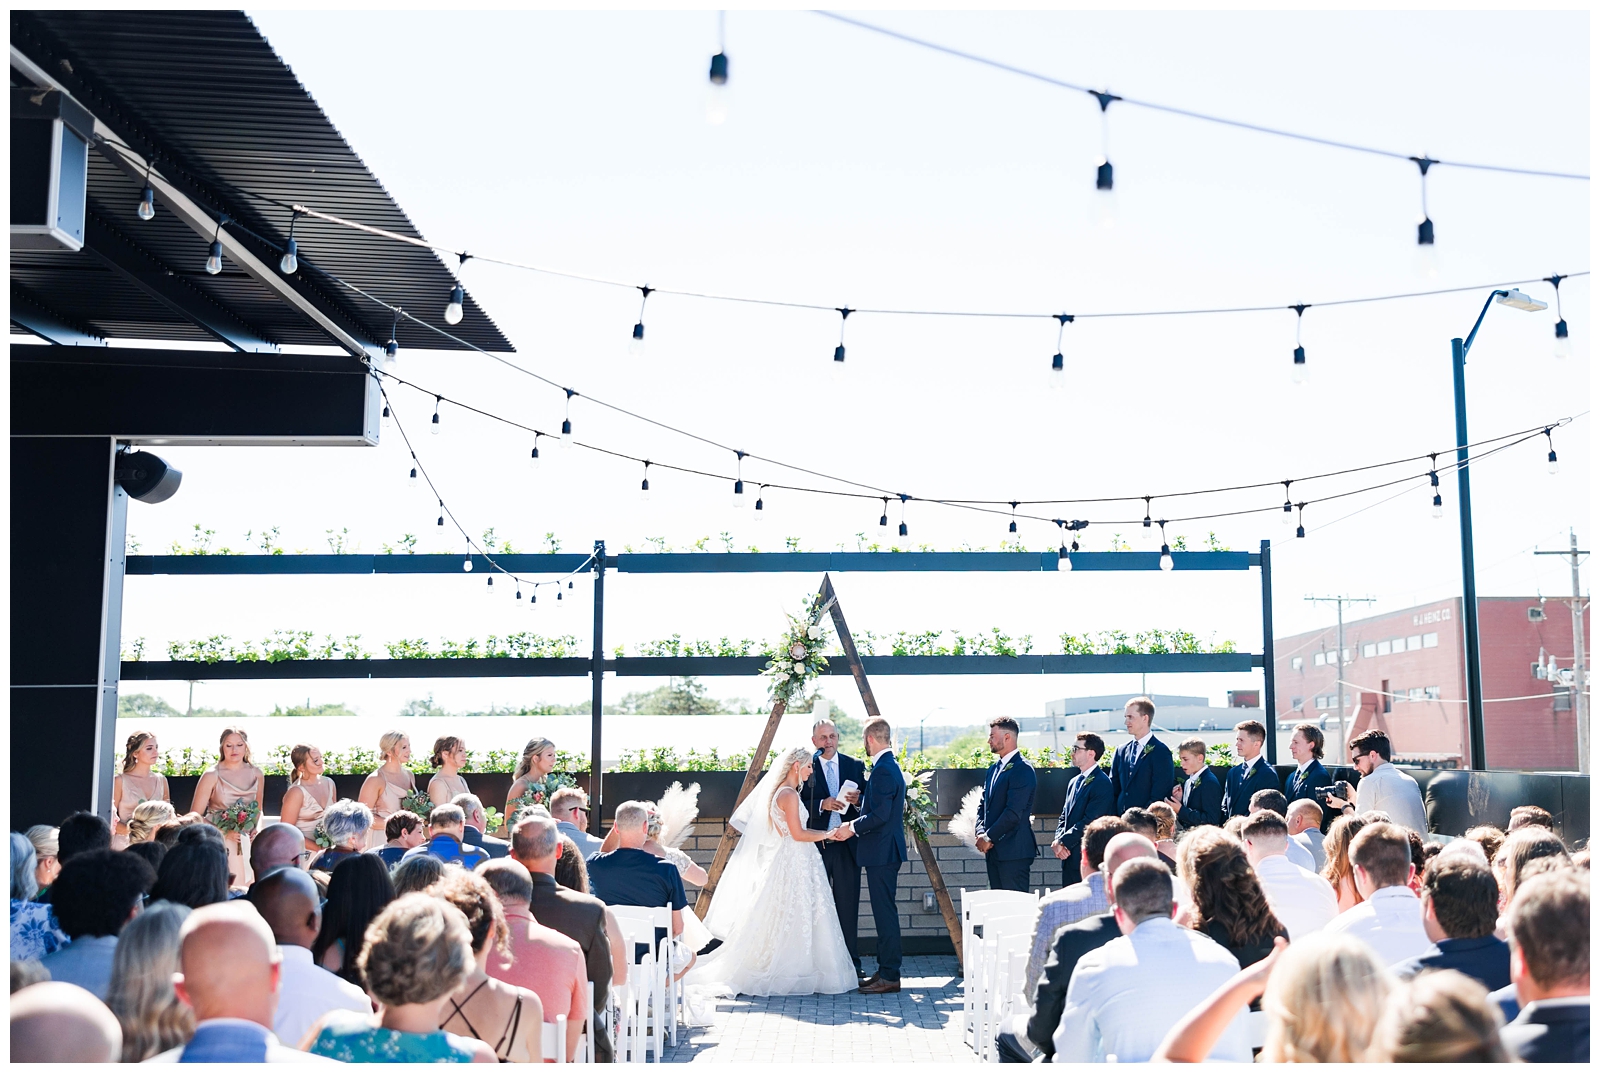 Outdoor rooftop wedding ceremony